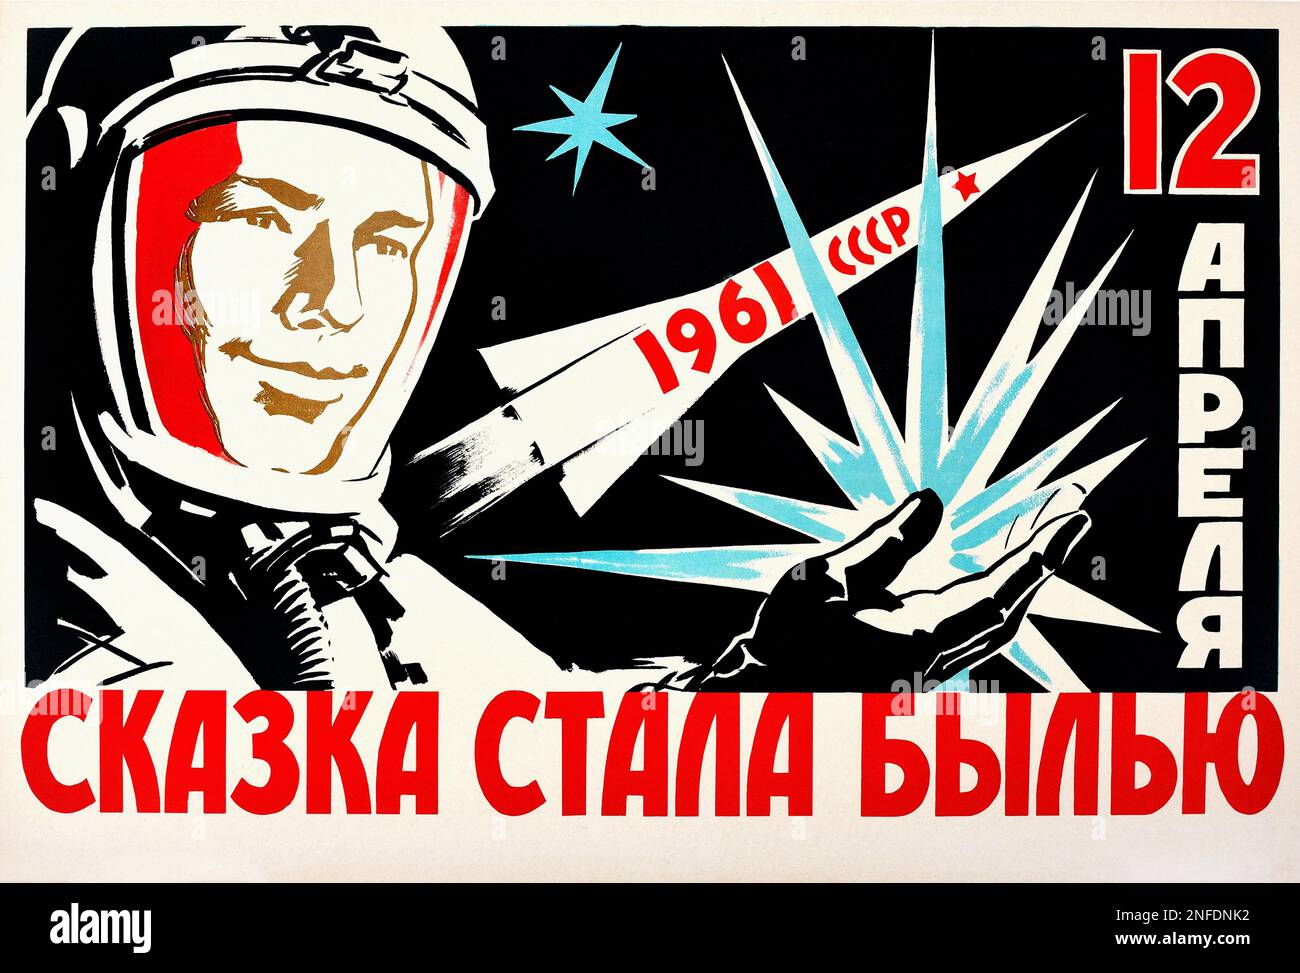 Poster spaziale sovietico - 'i sogni sono venuti vero del 12 aprile - volo spaziale presidiato 1st. Yuri Gagarin cosmonaut il primo umano a viaggiare nello spazio 1961 Foto Stock